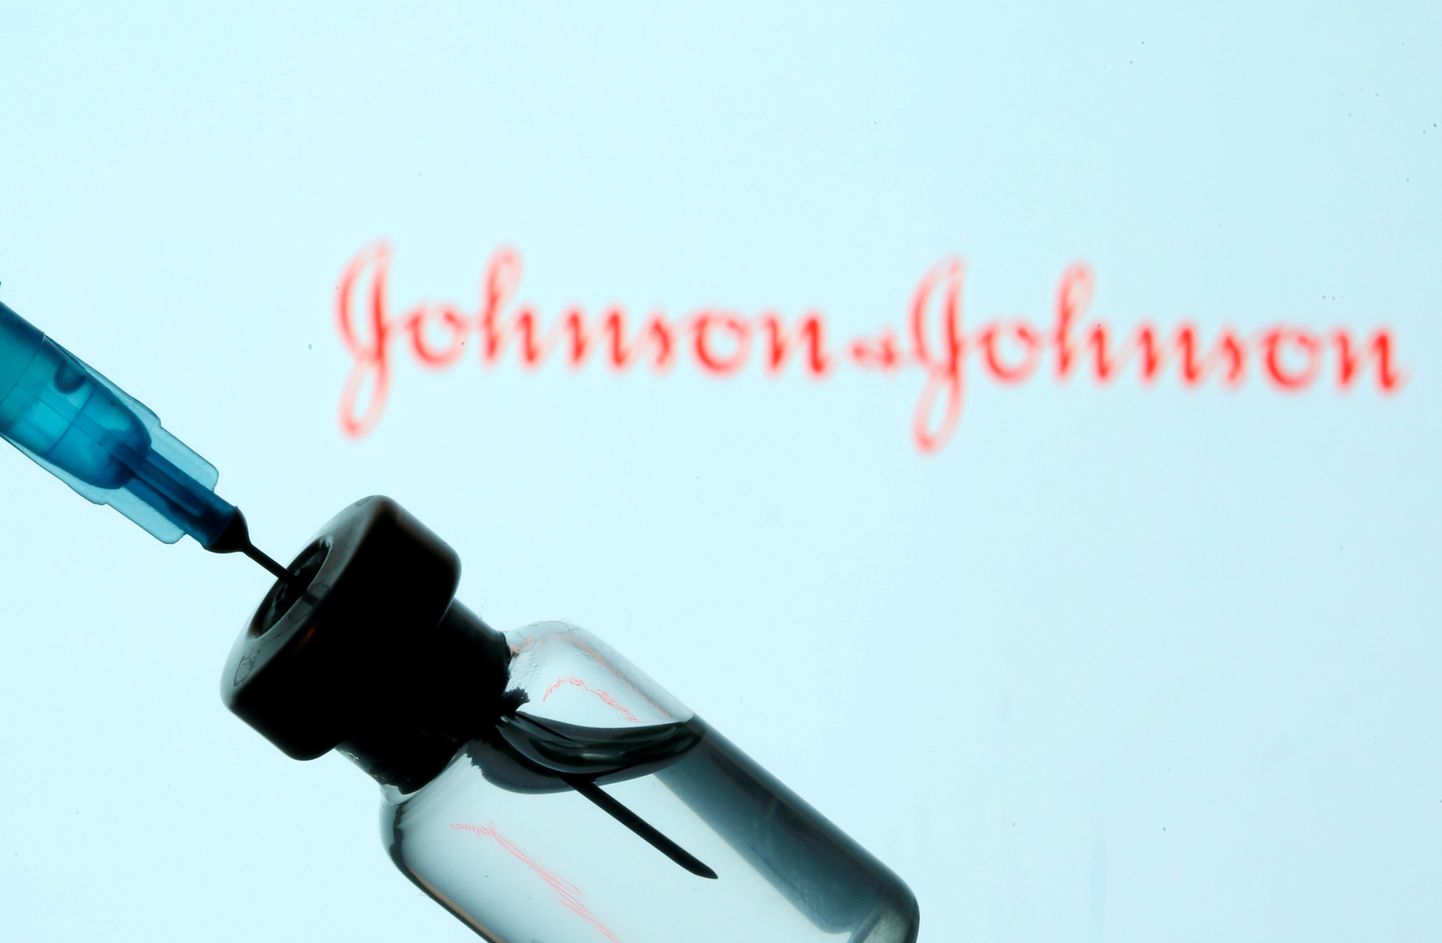 Johnson & Johnsoni vaktsiin.